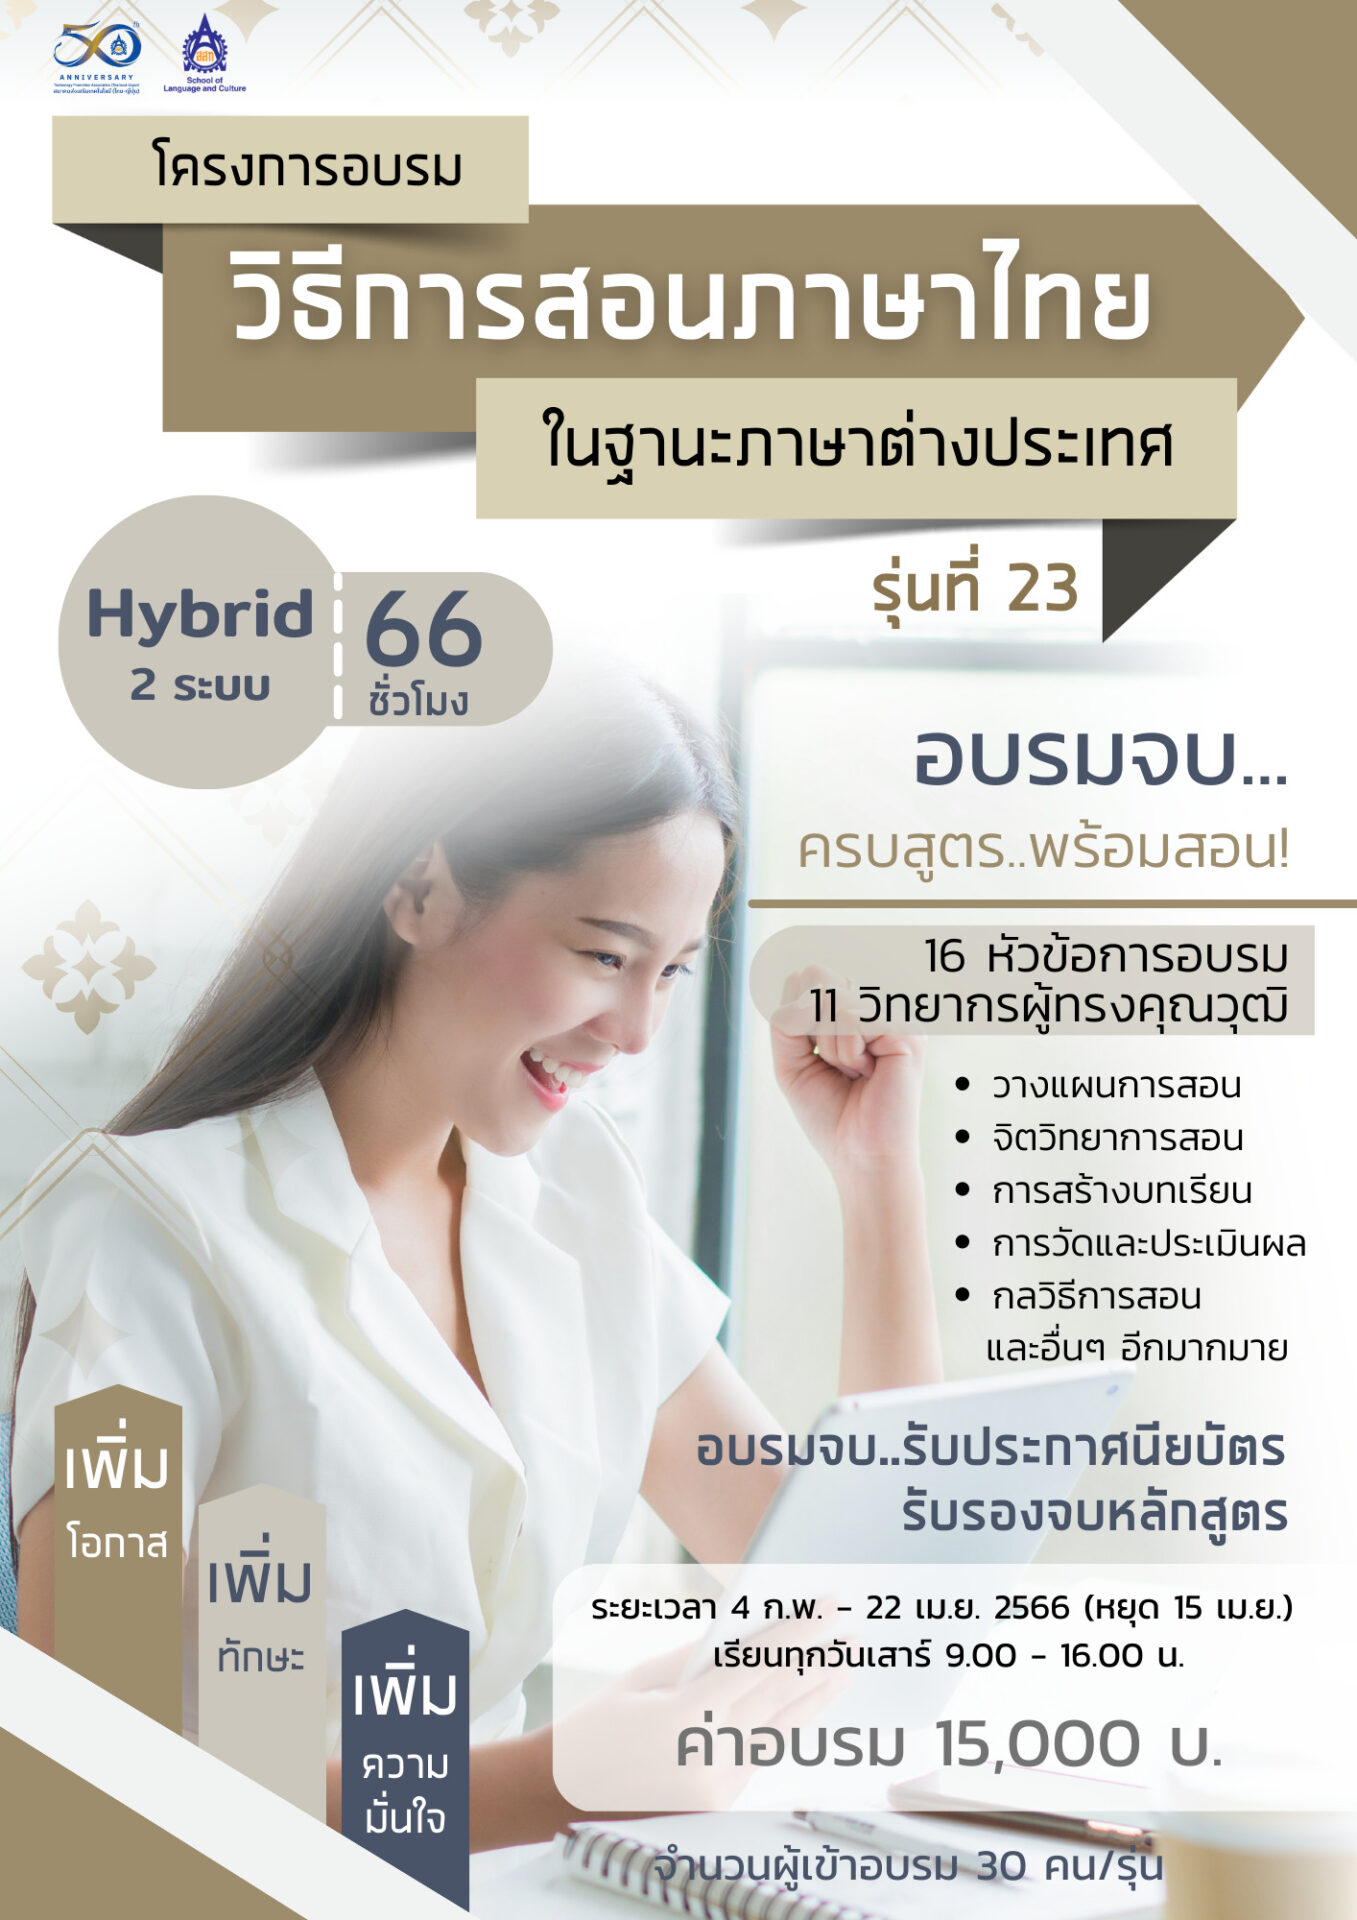 โครงการอบรมวิธีการสอนภาษาไทยให้ชาวต่างชาติ